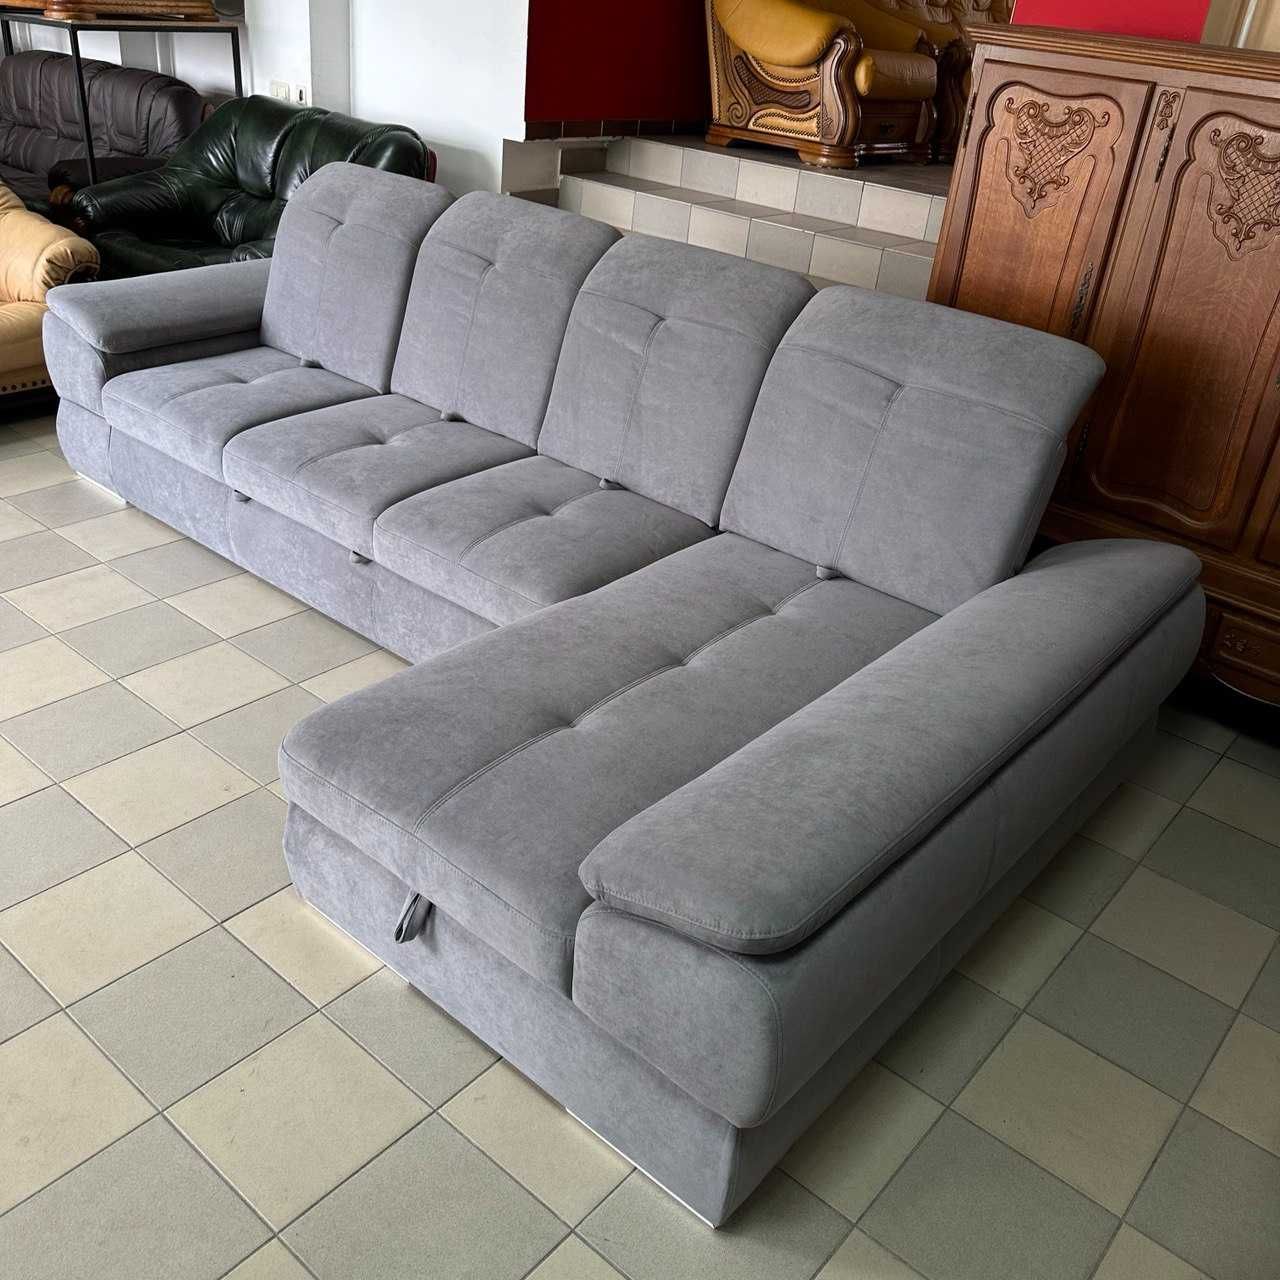 БЕЗКОШТОВНА ДОСТАВКА Новий розкладний диван з нішею для сну